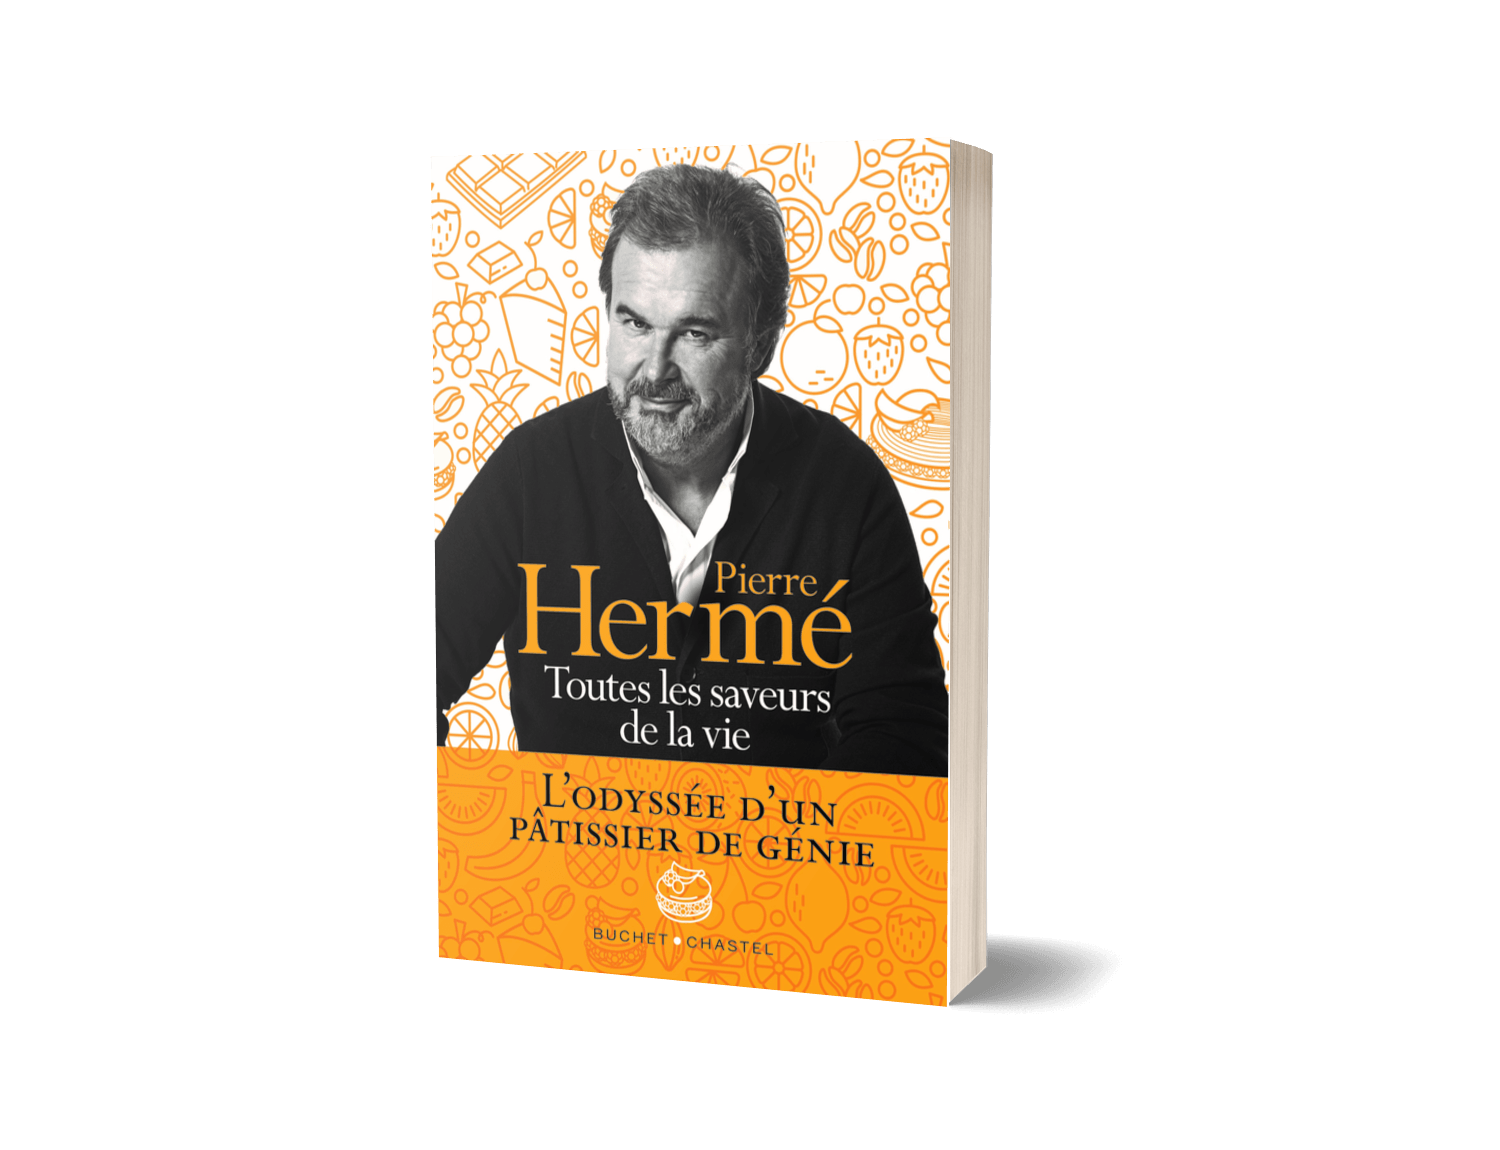 Pierre hermé, livre, biographie, toutes les saveurs de la vie, catherine roig